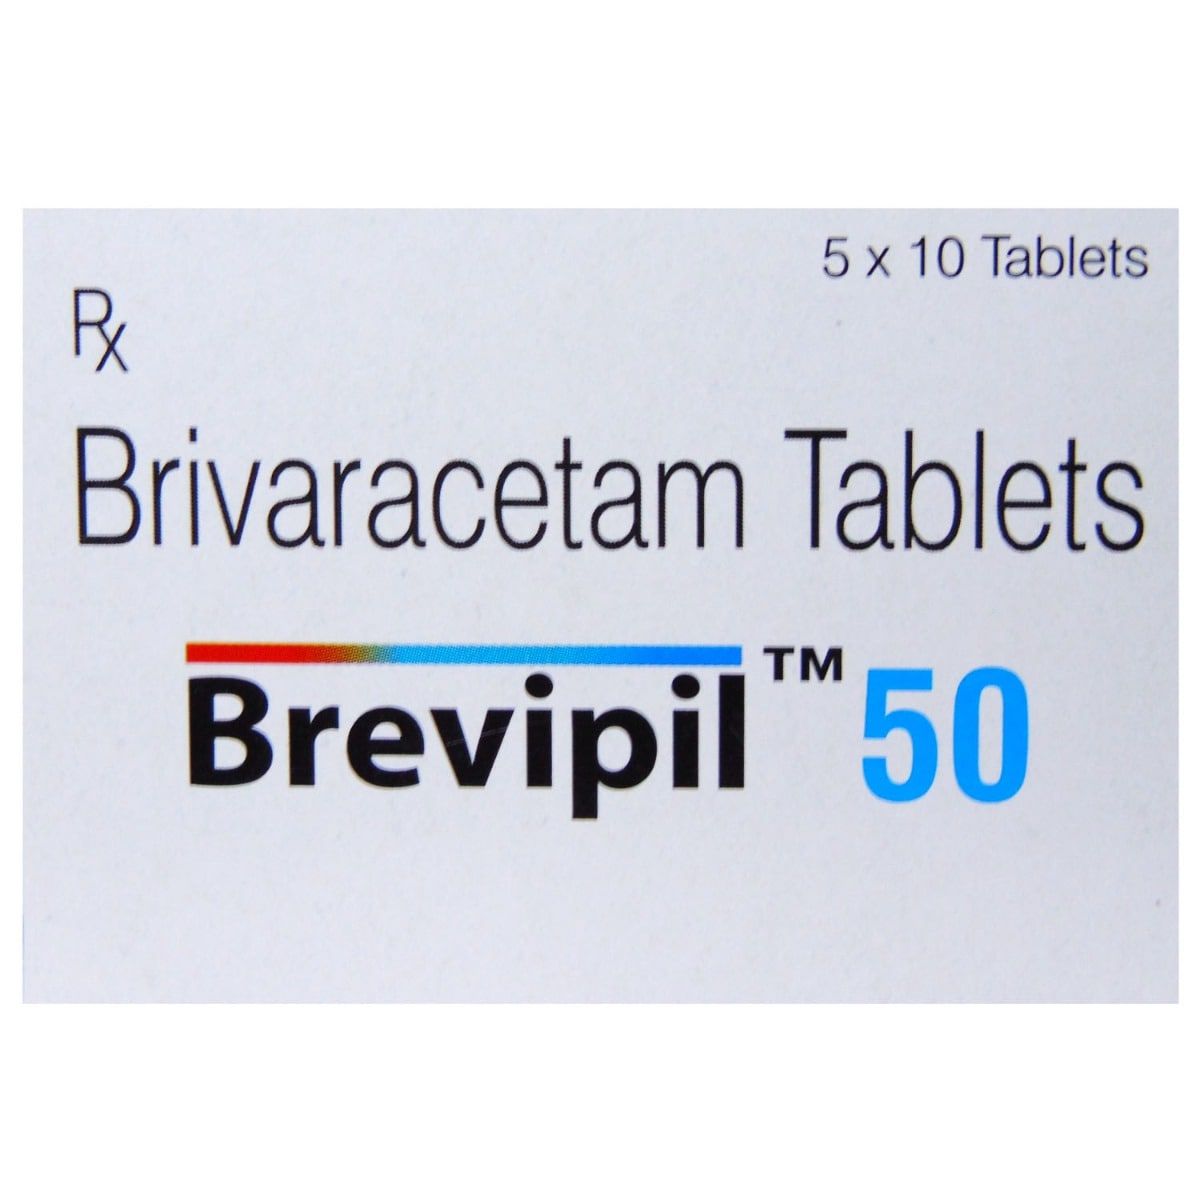 Brevipil 50 Tablet 10's, Pack of 10 TABLETS